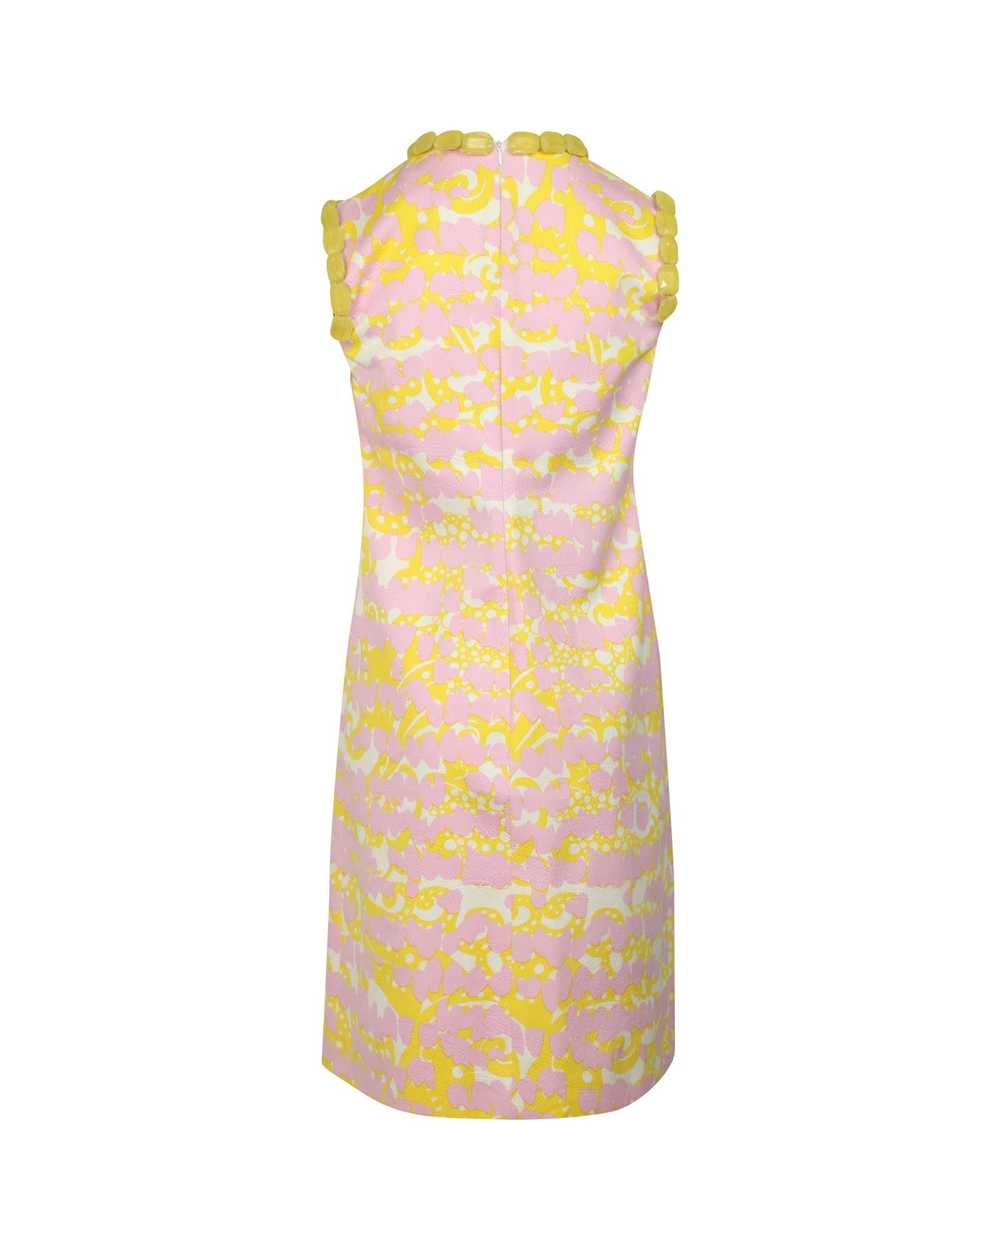 Giambattista Valli Floral Print Cotton Dress with… - image 5